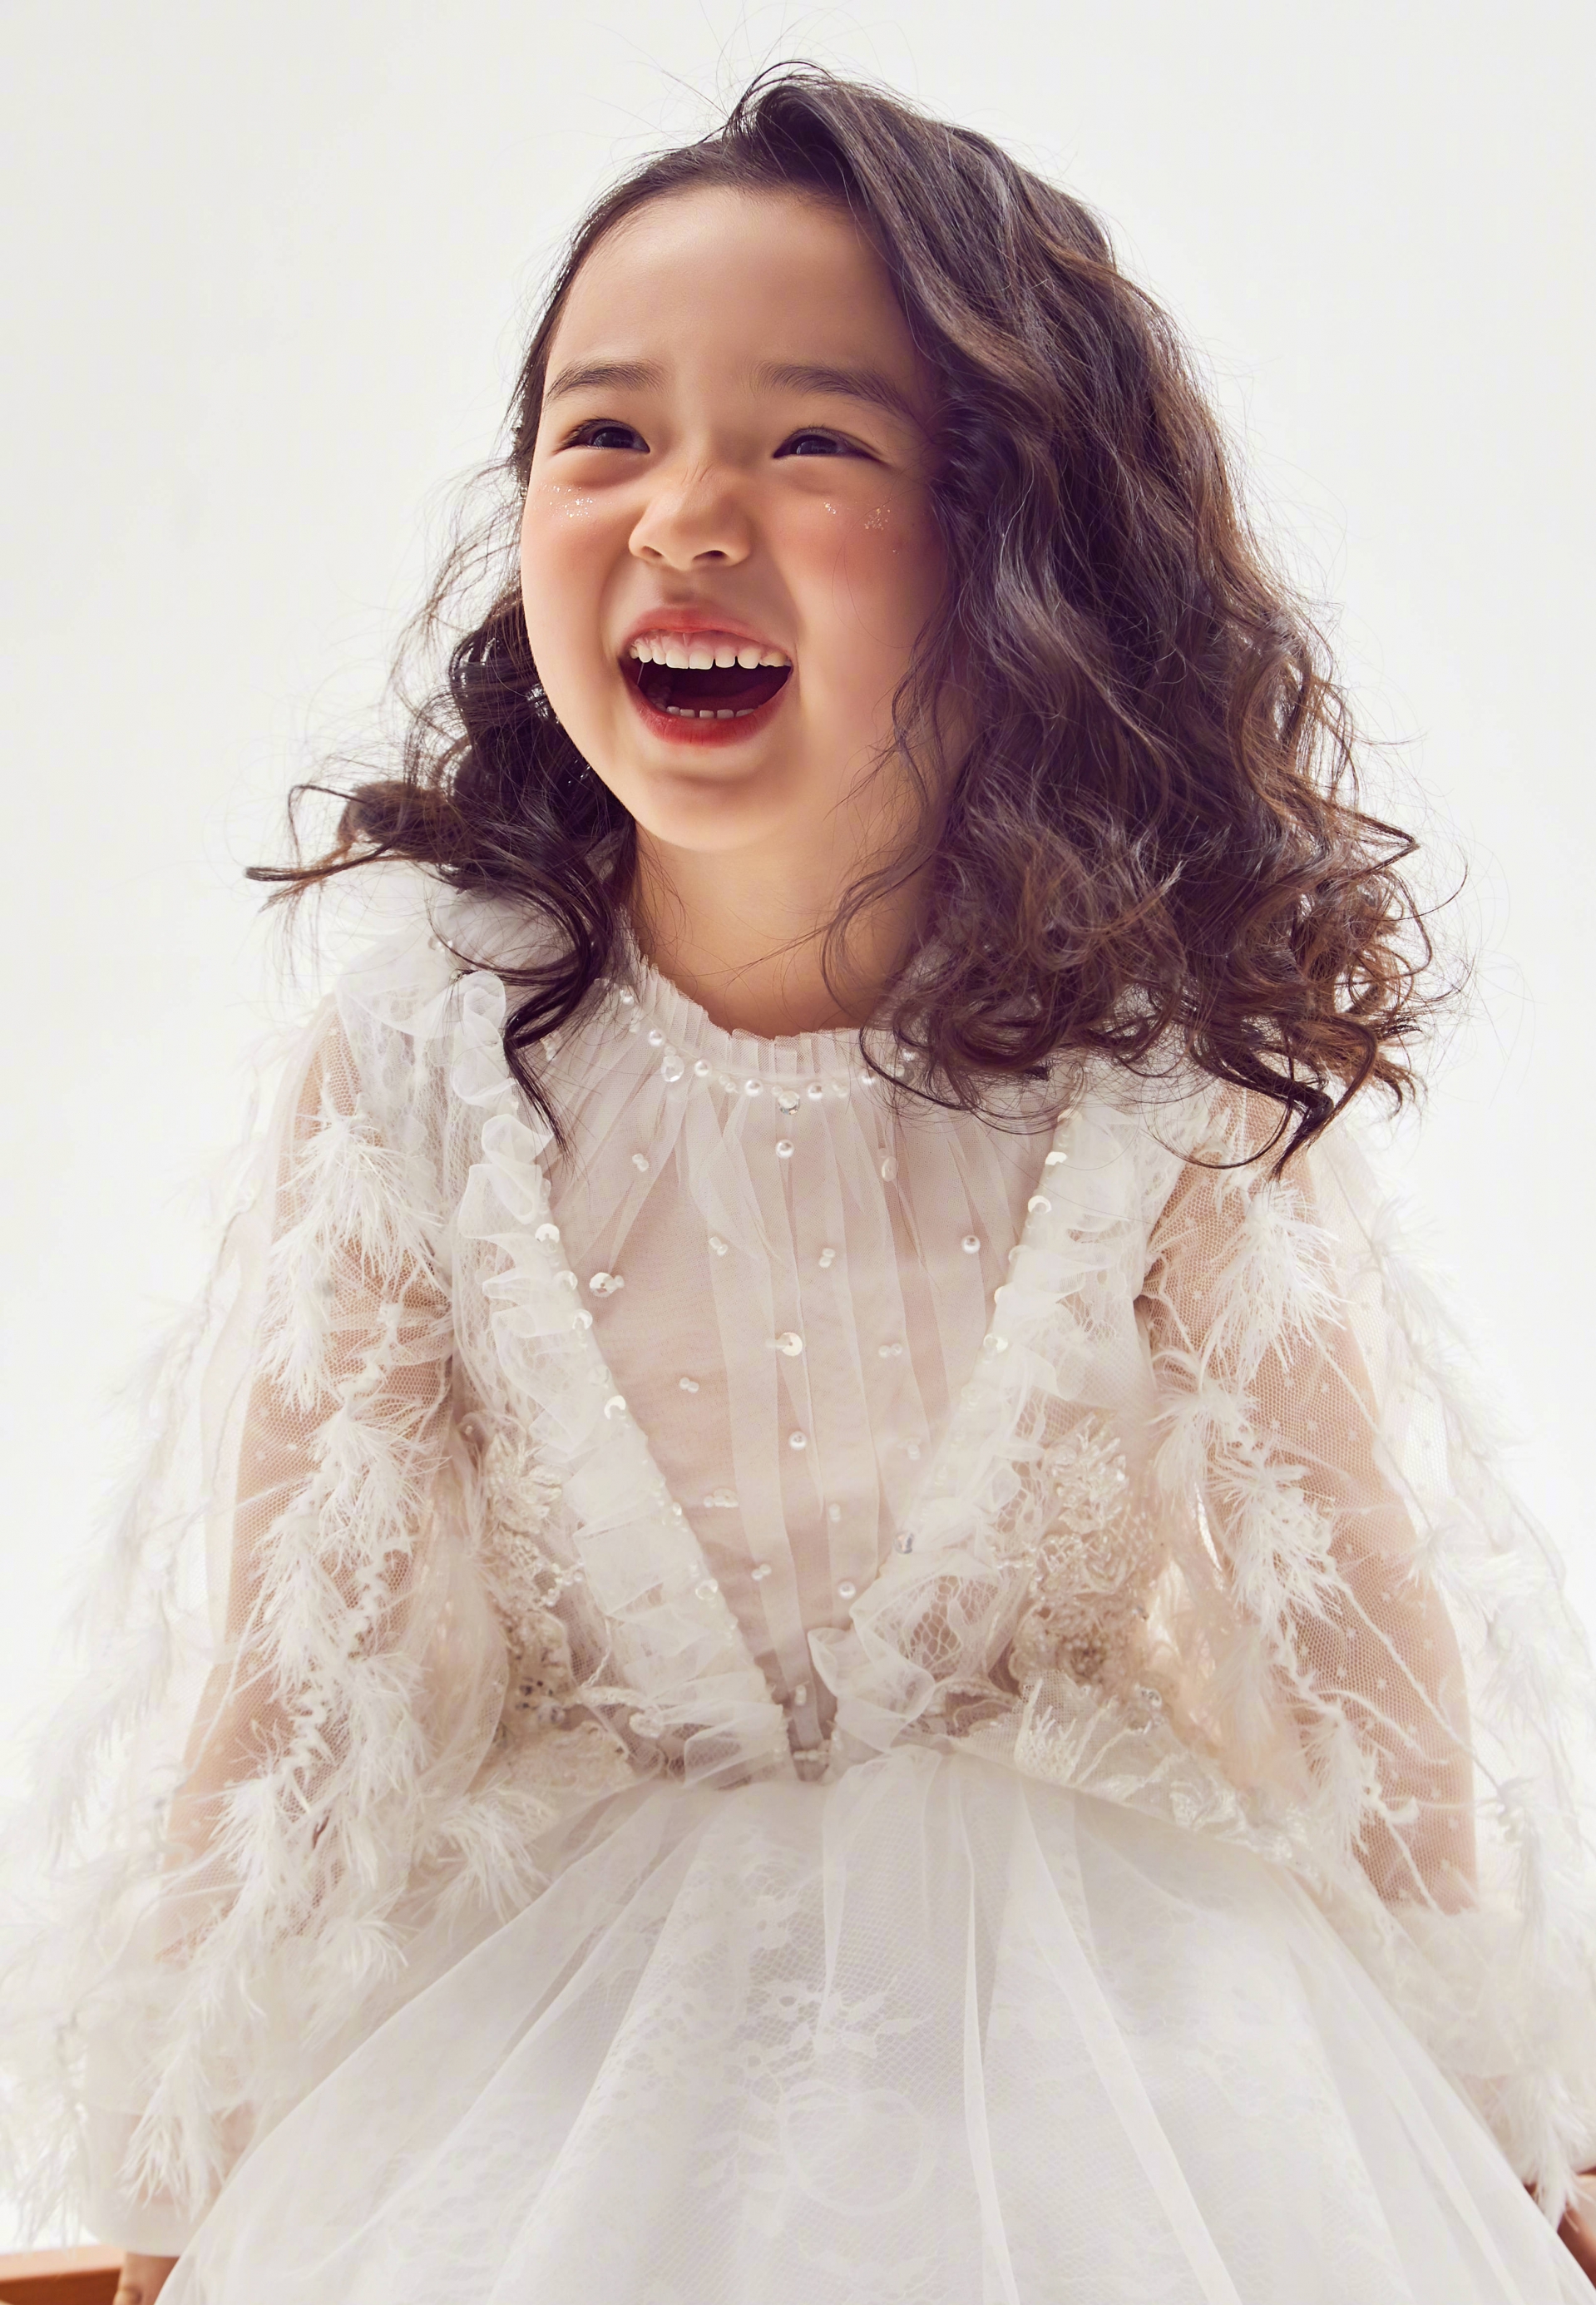 Con gái 'Điêu Thuyền' Đổng Tuyền mới 5 tuổi đã xinh tựa thiên thần, thả nhẹ bộ ảnh cũng gây sốt Weibo 9